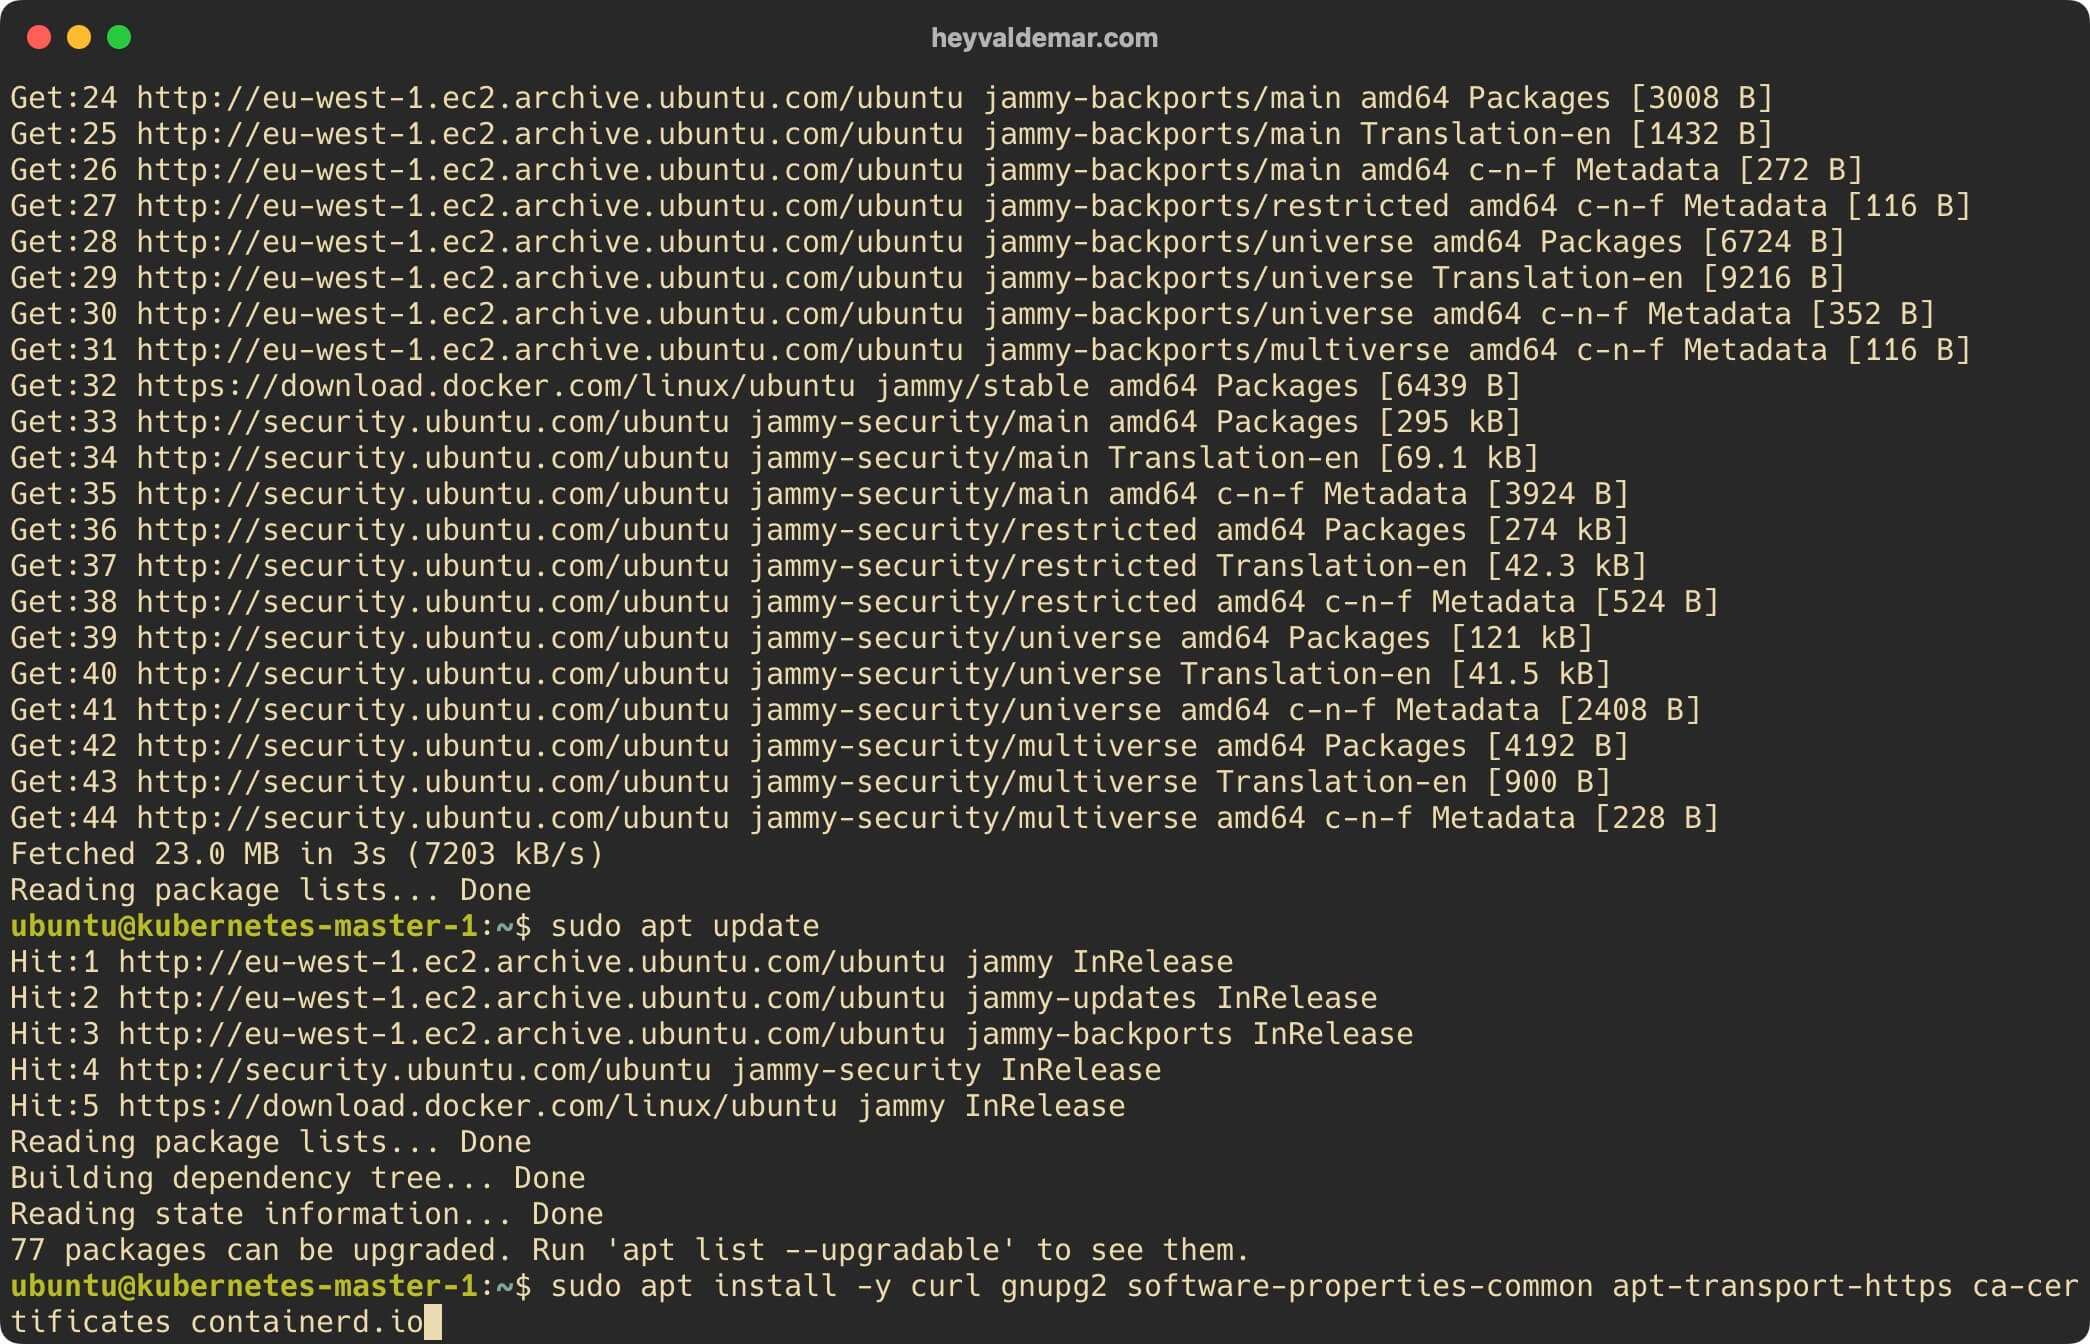 Install Kubernetes on Ubuntu Server 22.04 LTS